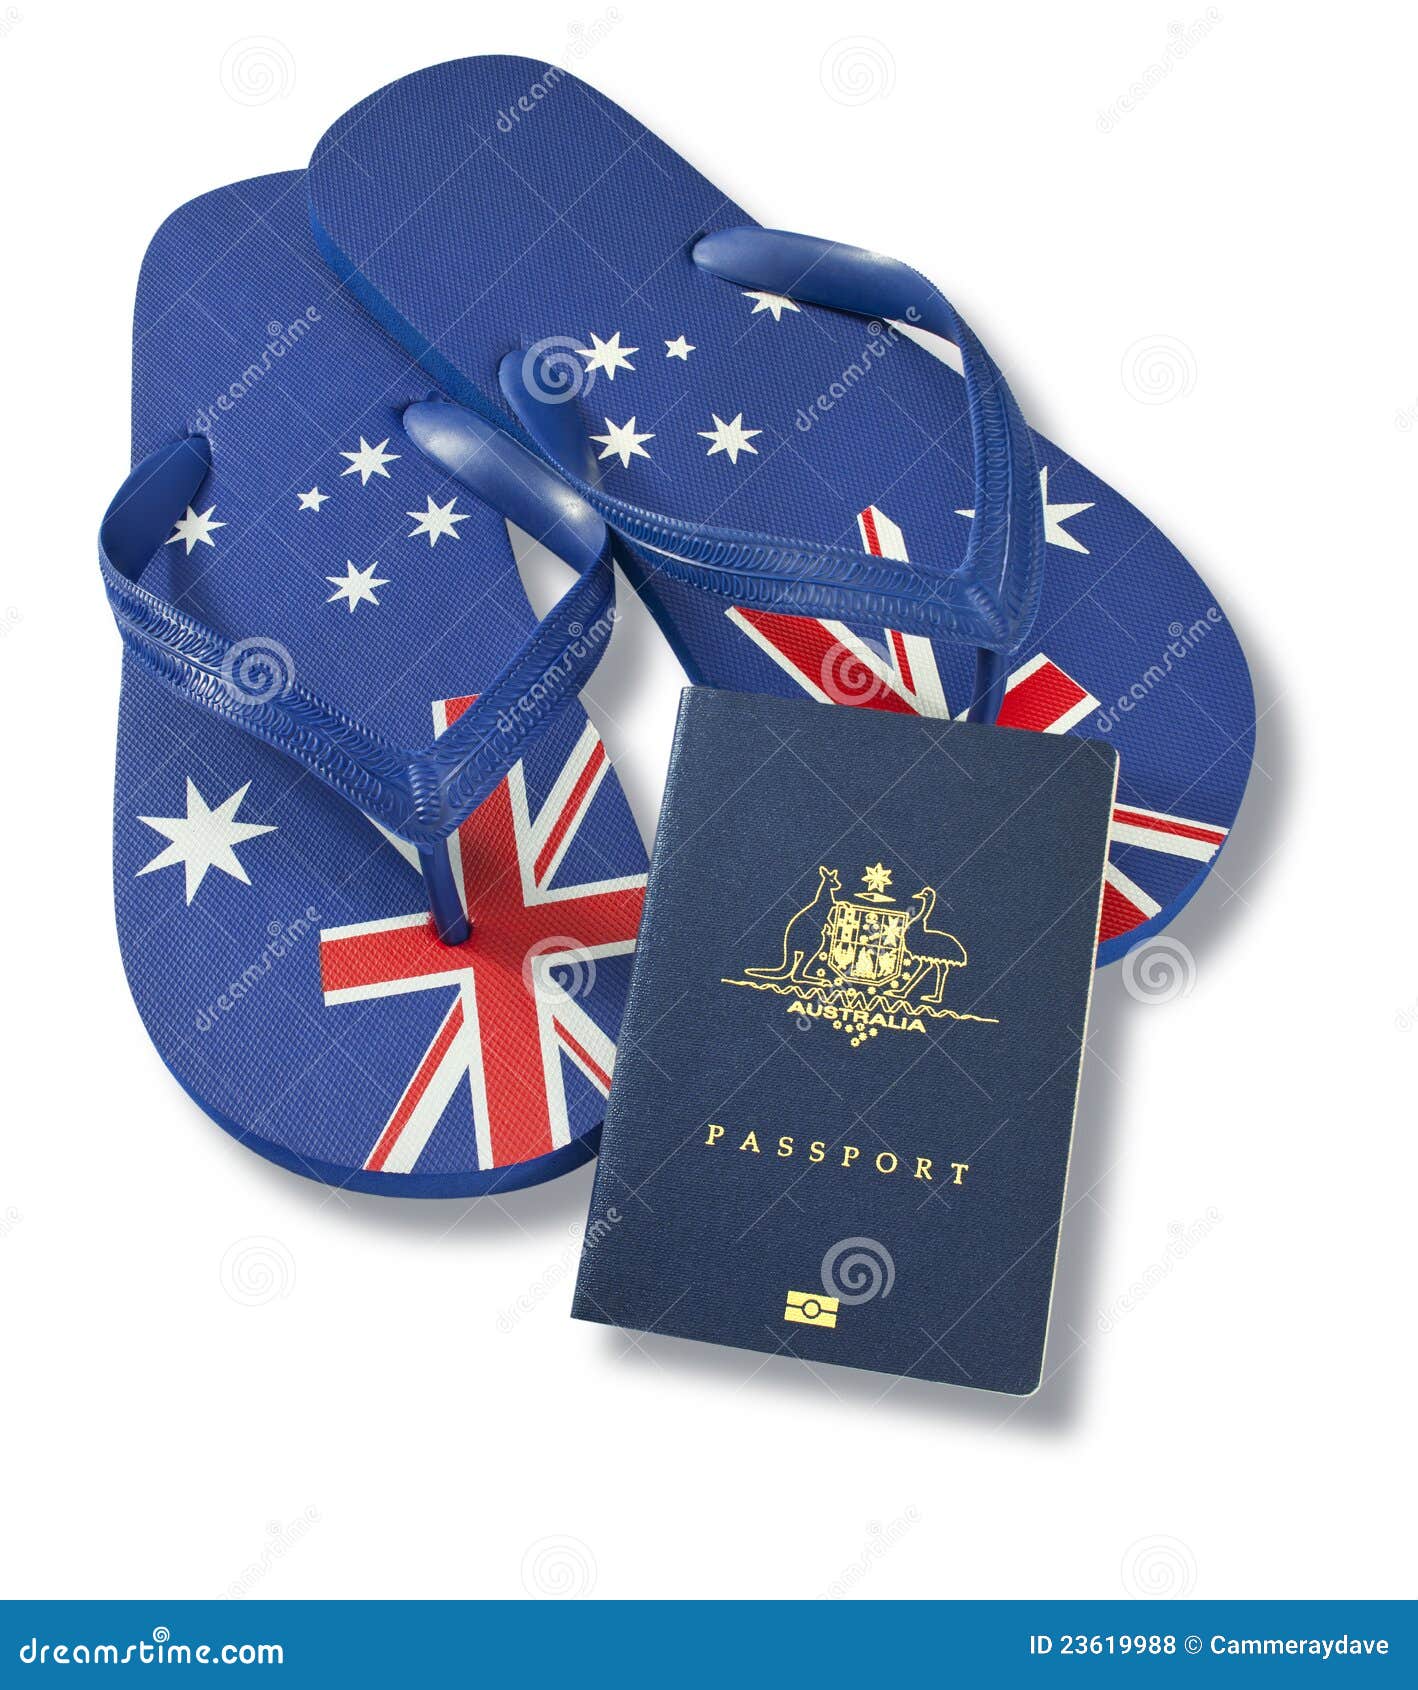 申请严重积压 澳洲护照更新时间翻一倍 - 澳洲生活网